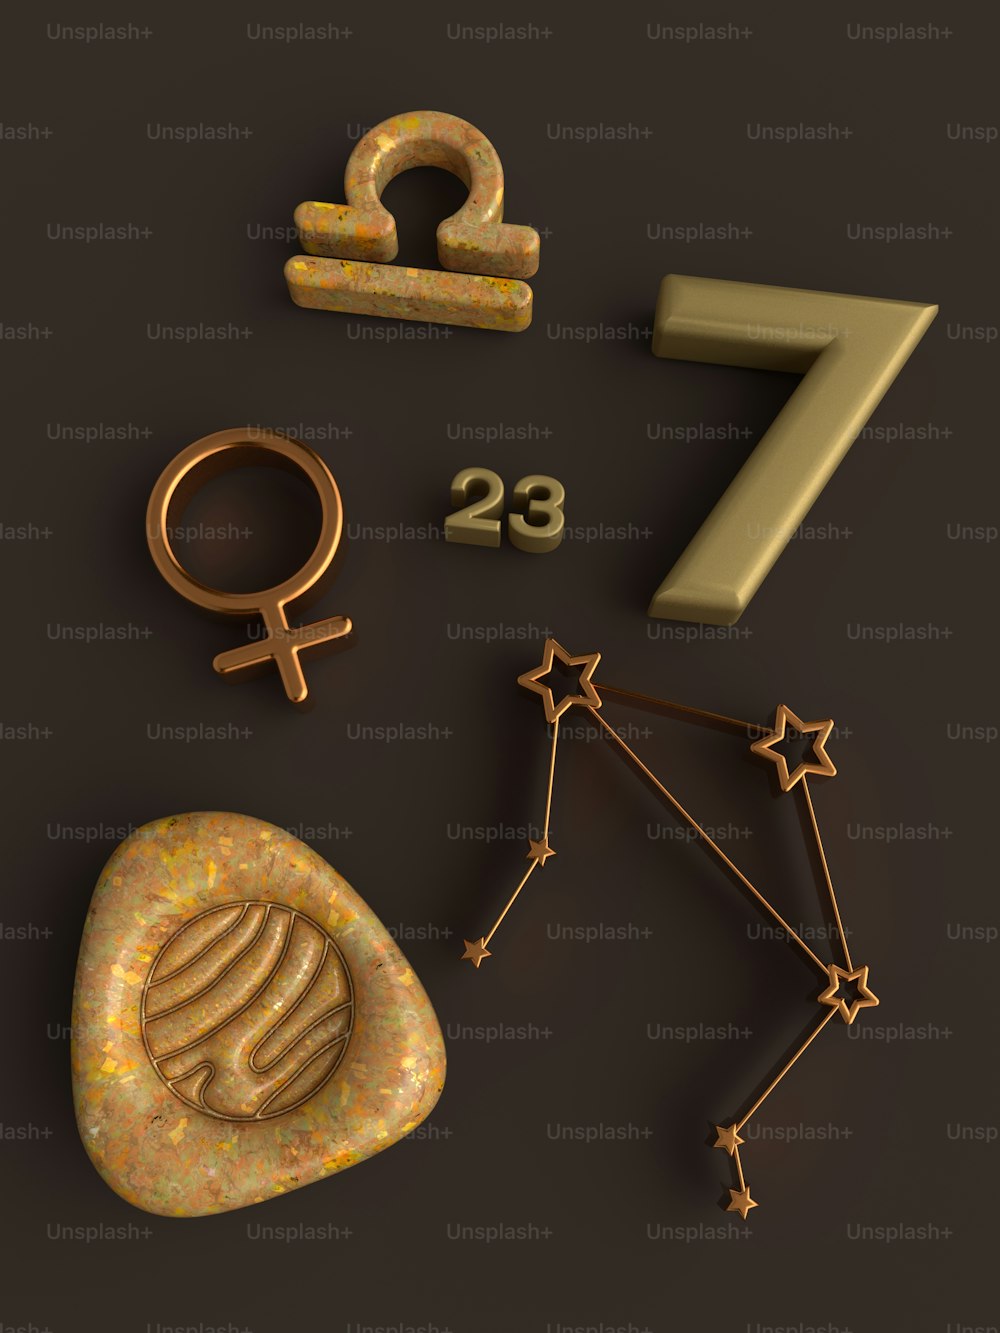 Vários símbolos astrológicos são mostrados